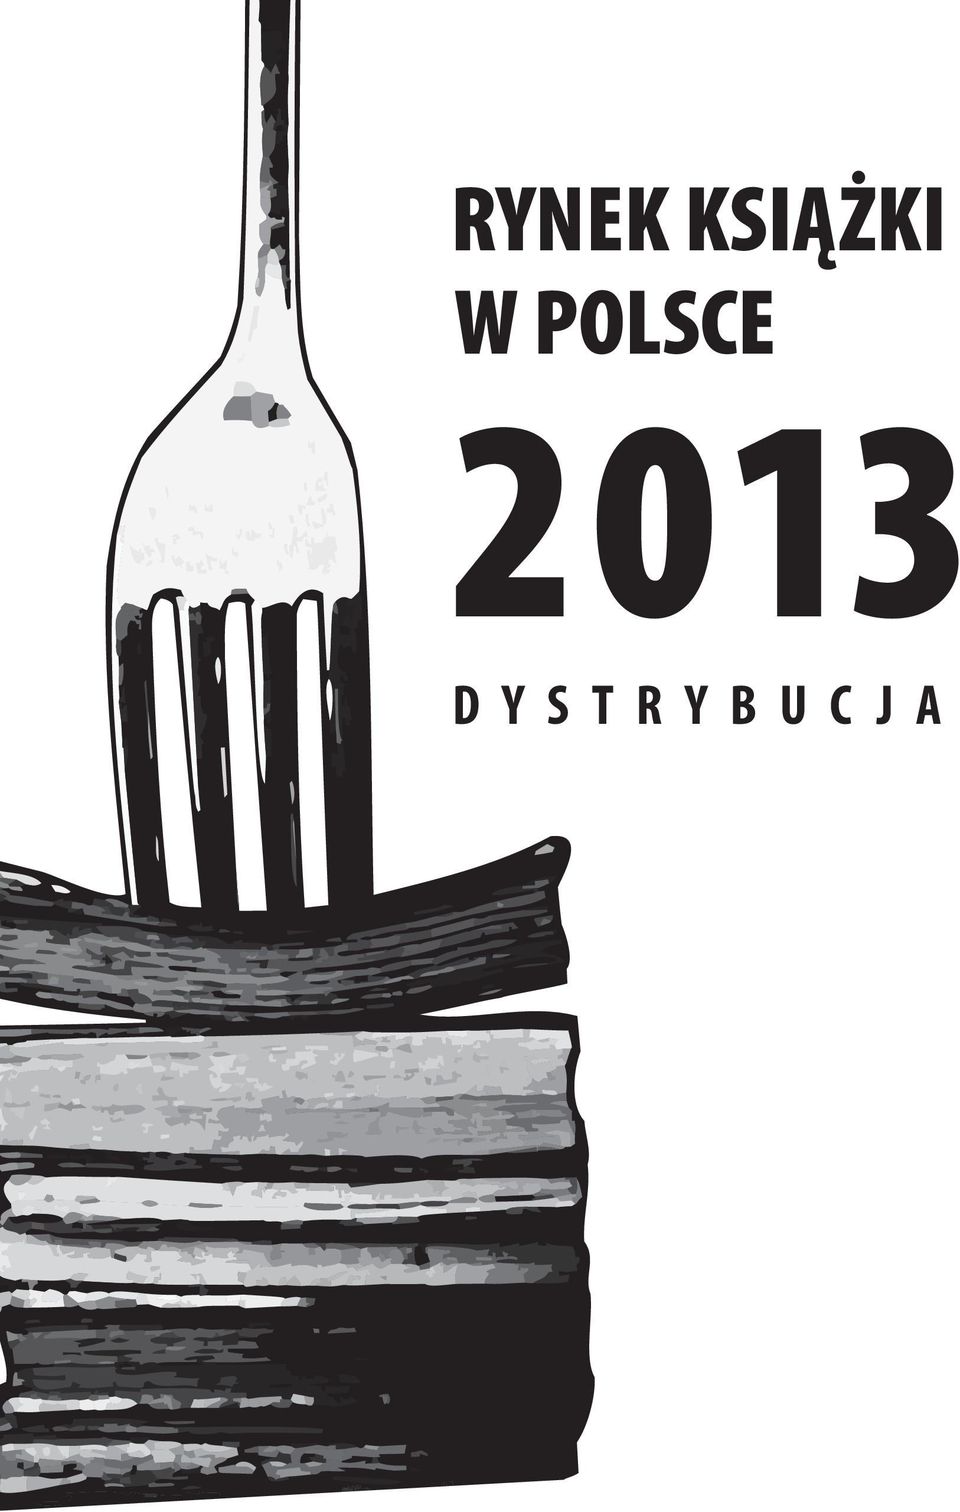 POLSCE 2013